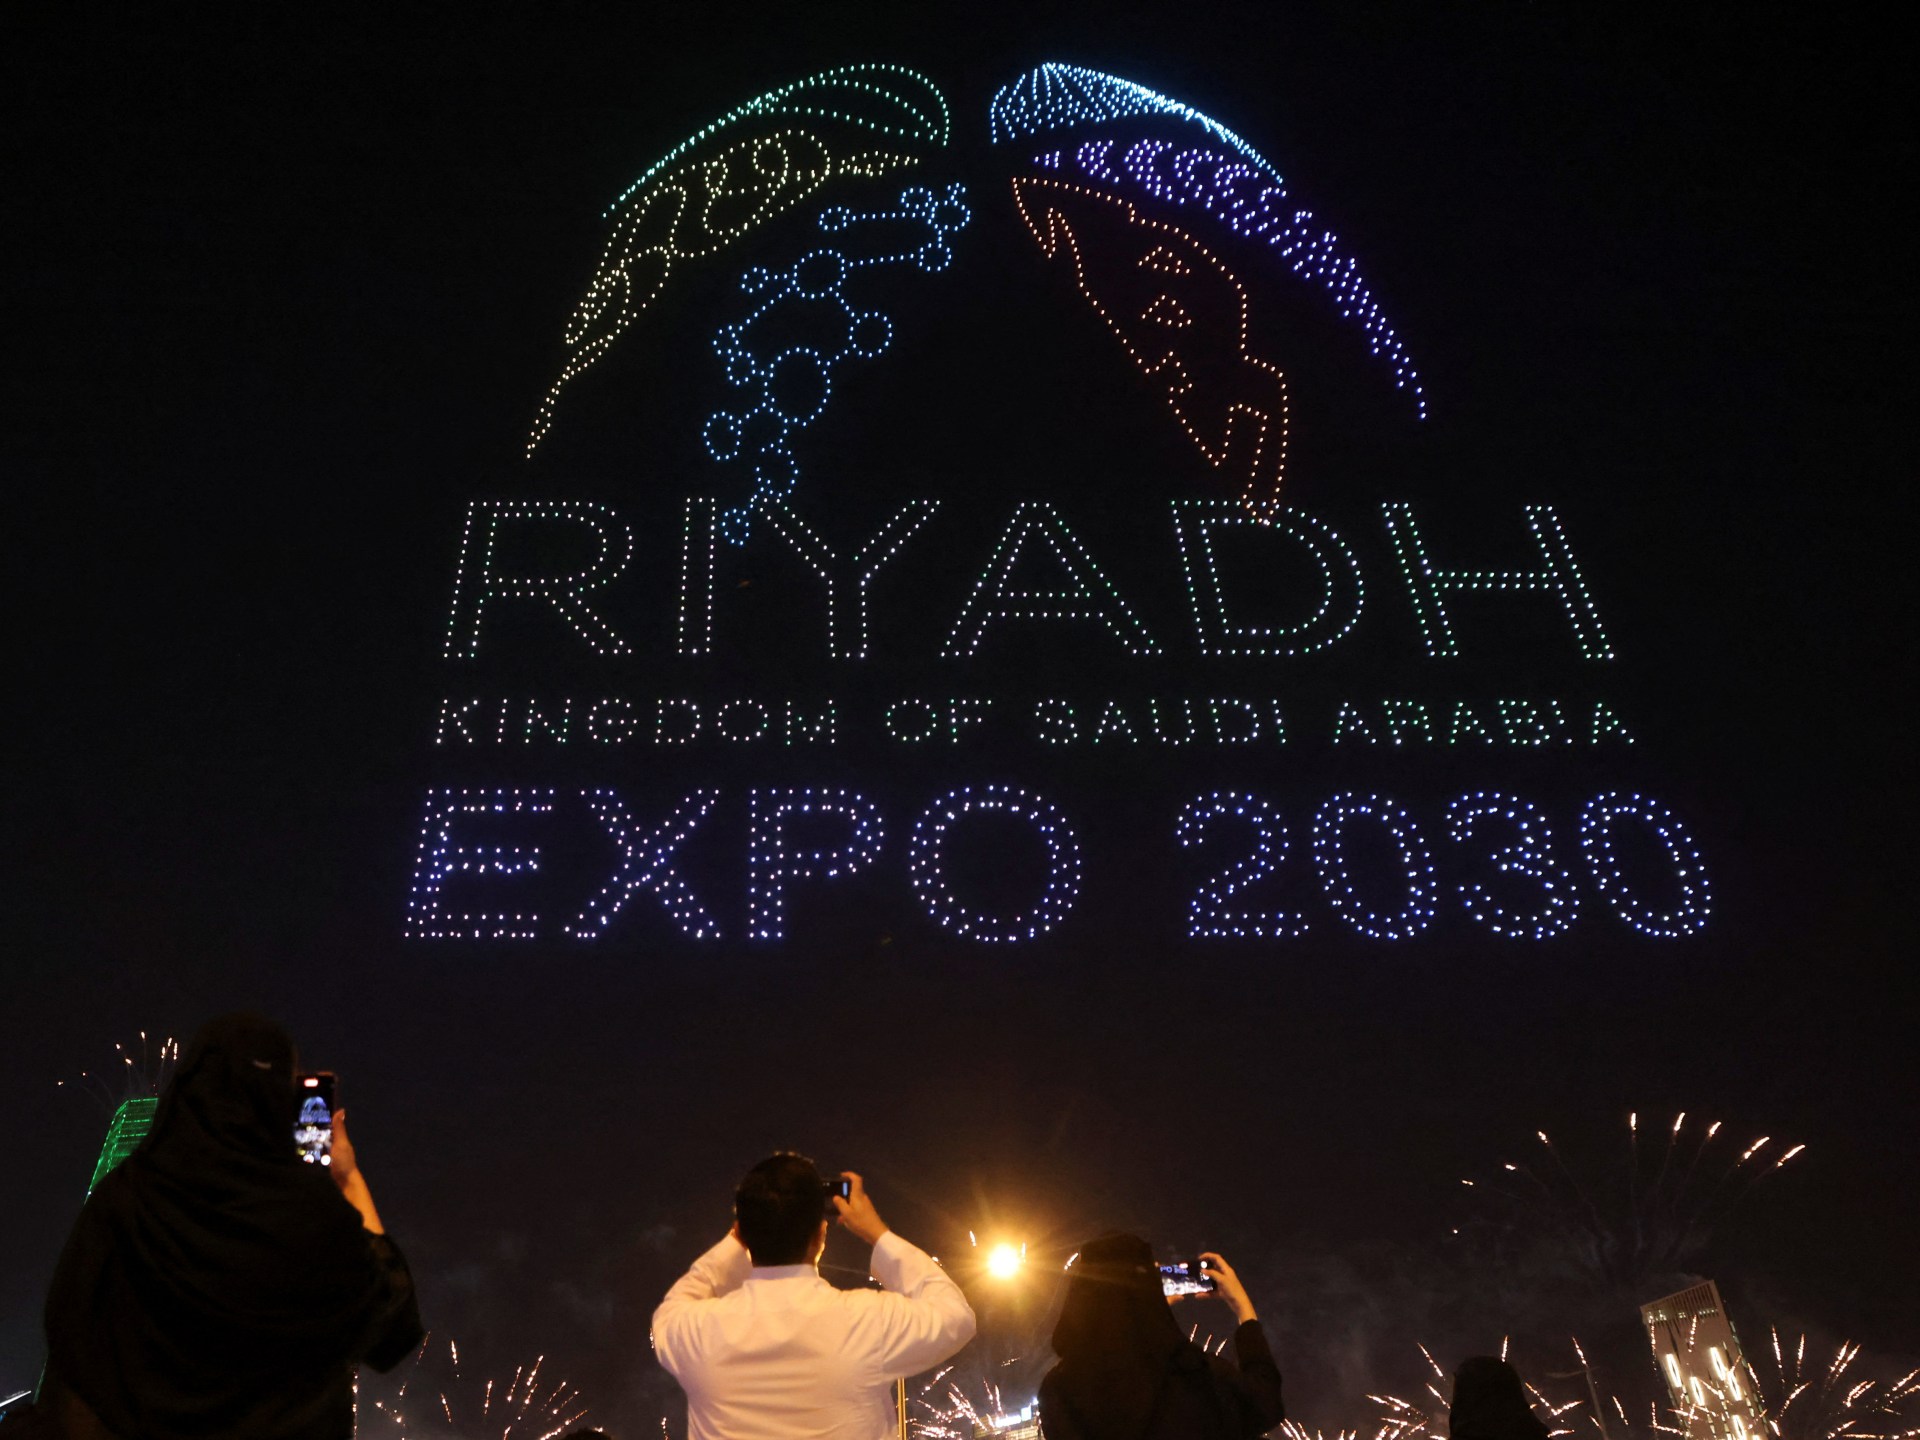 اختيار المملكة العربية السعودية لاستضافة معرض إكسبو العالمي في عام 2030 |  الأخبار الترفيهية